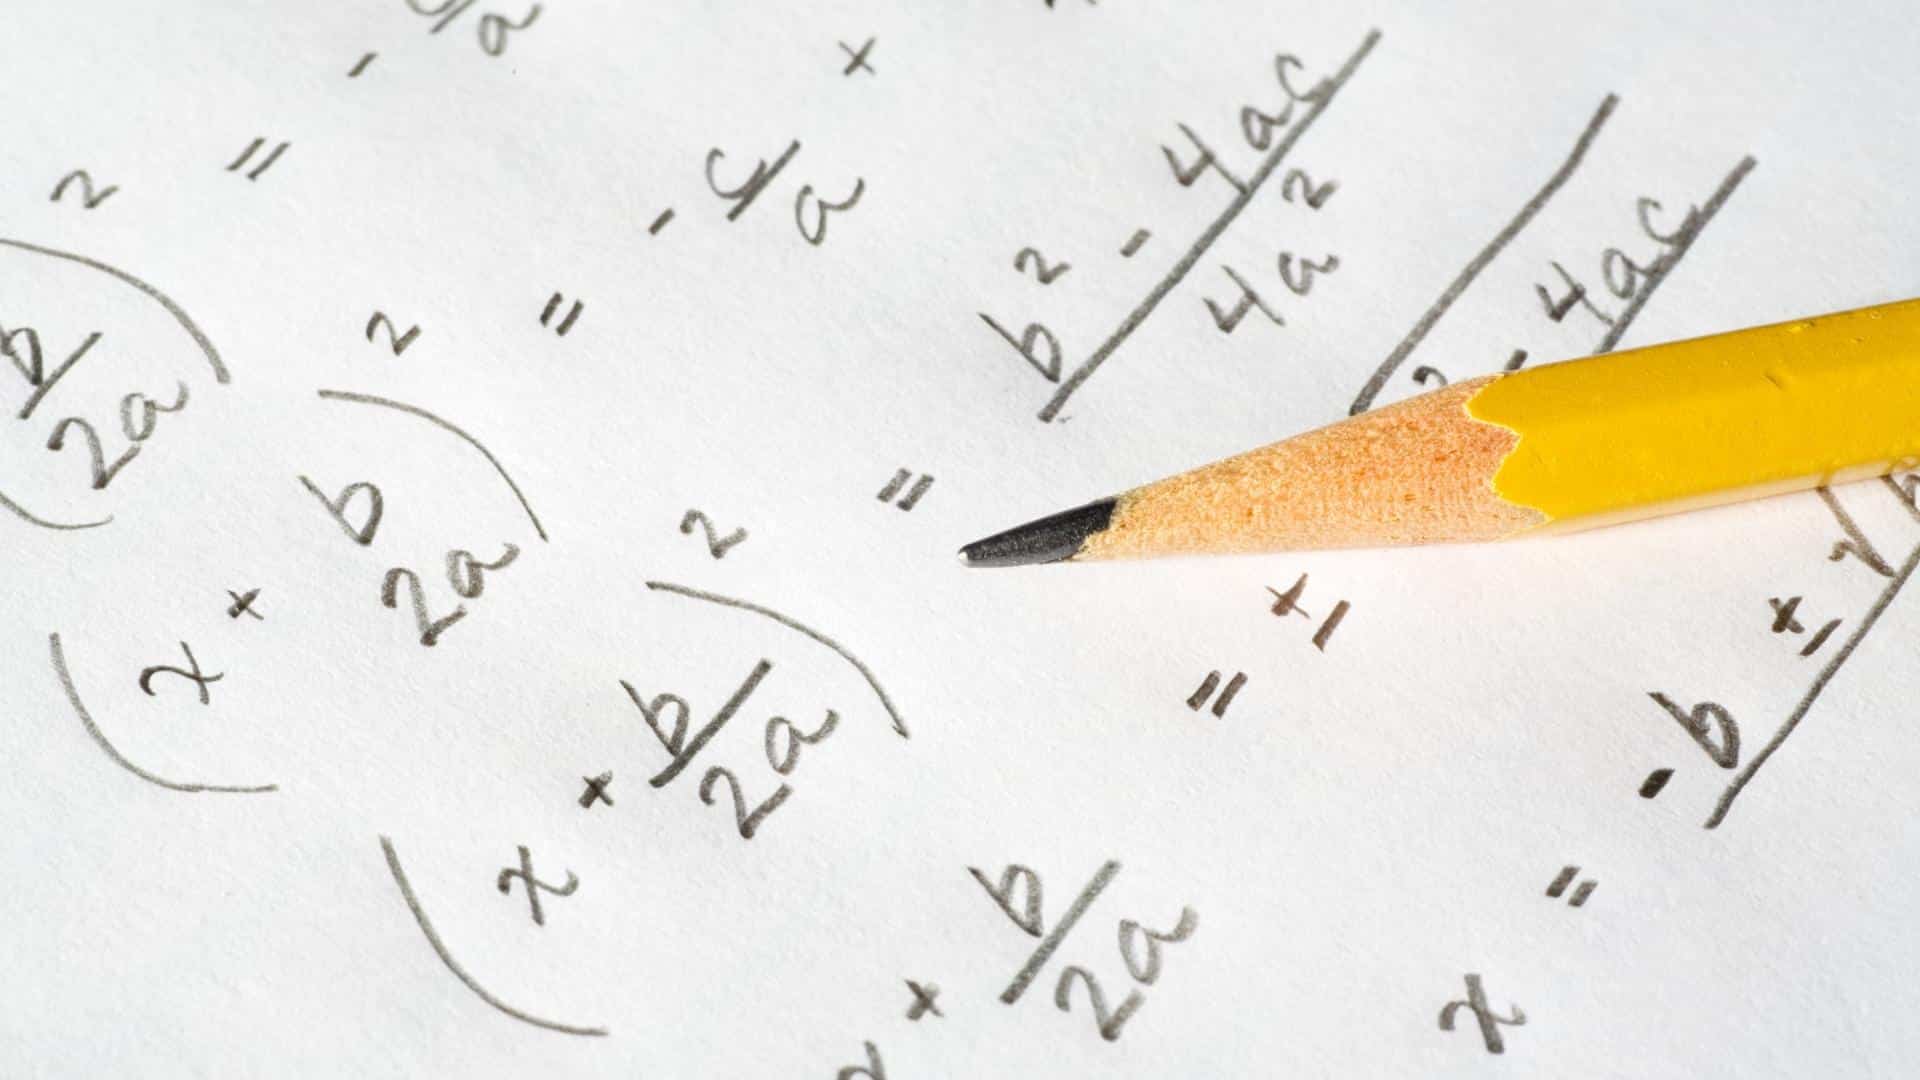 טעויות נפוצות של תלמידים במתמטיקה